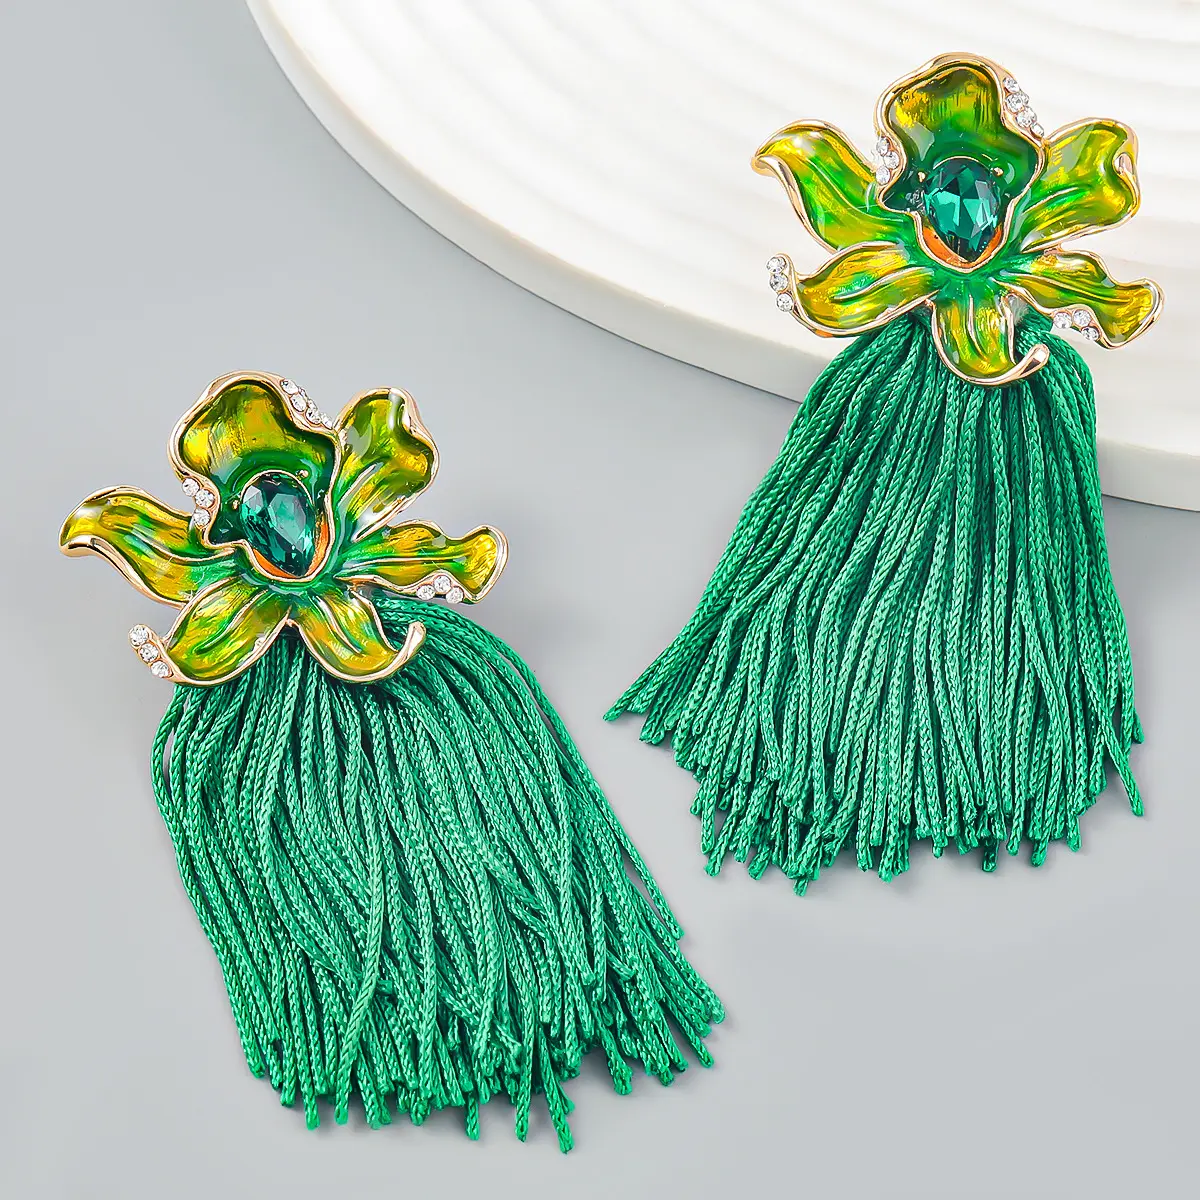 Fashion jewelry wholesale New Bohemian ethnic style green tassel earrings alloy oil drop flower long tassel earrings for women